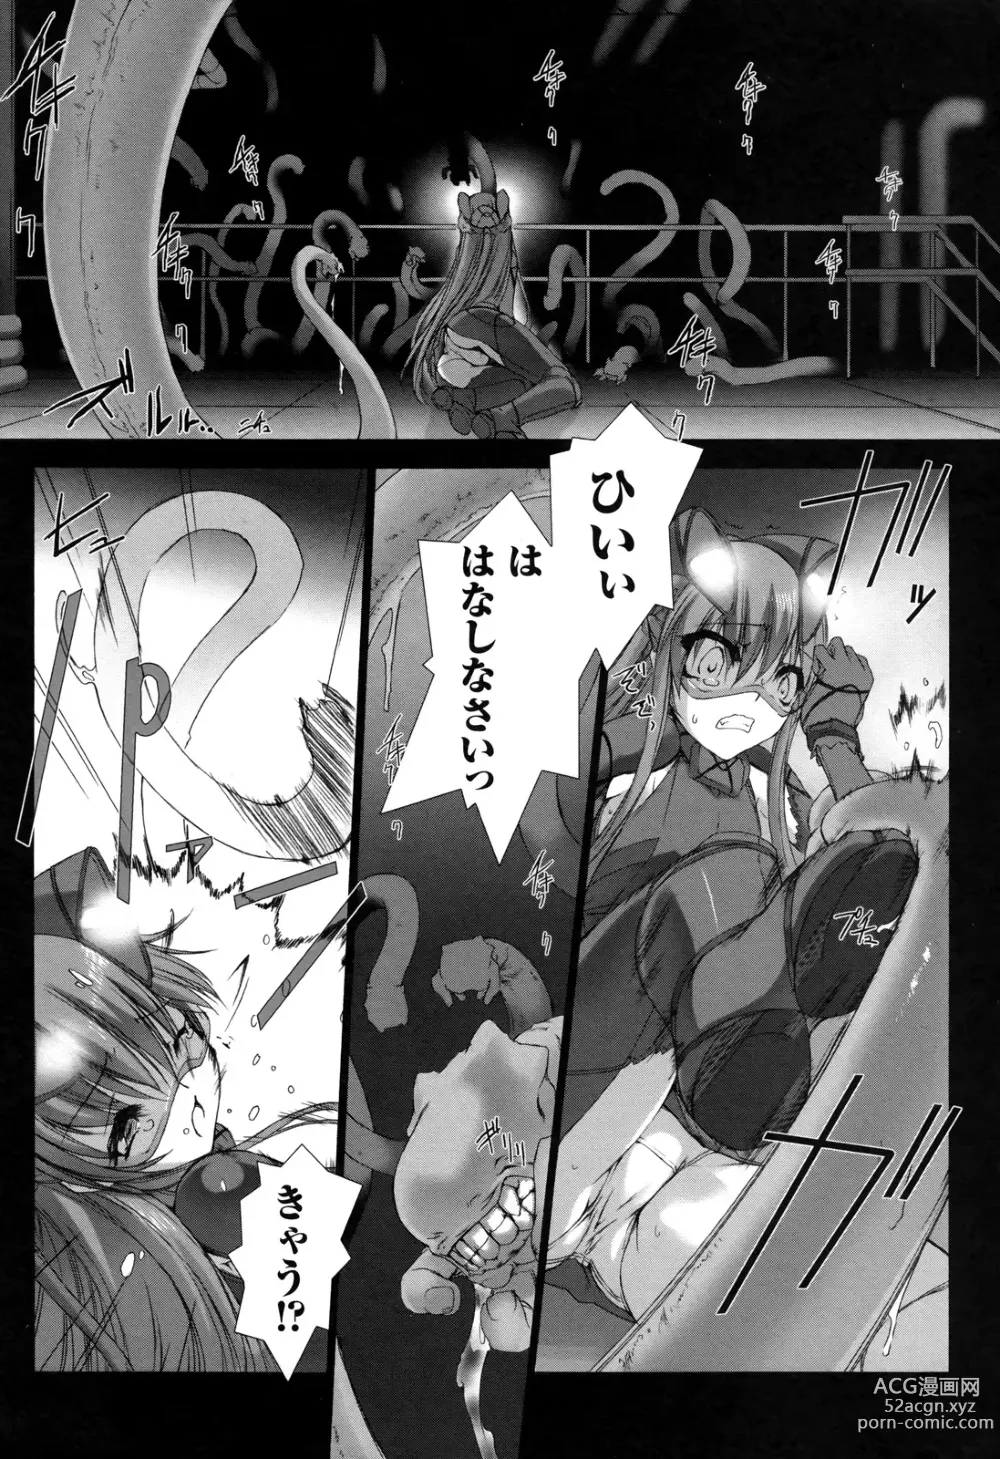 Page 185 of manga Ziggurat 2